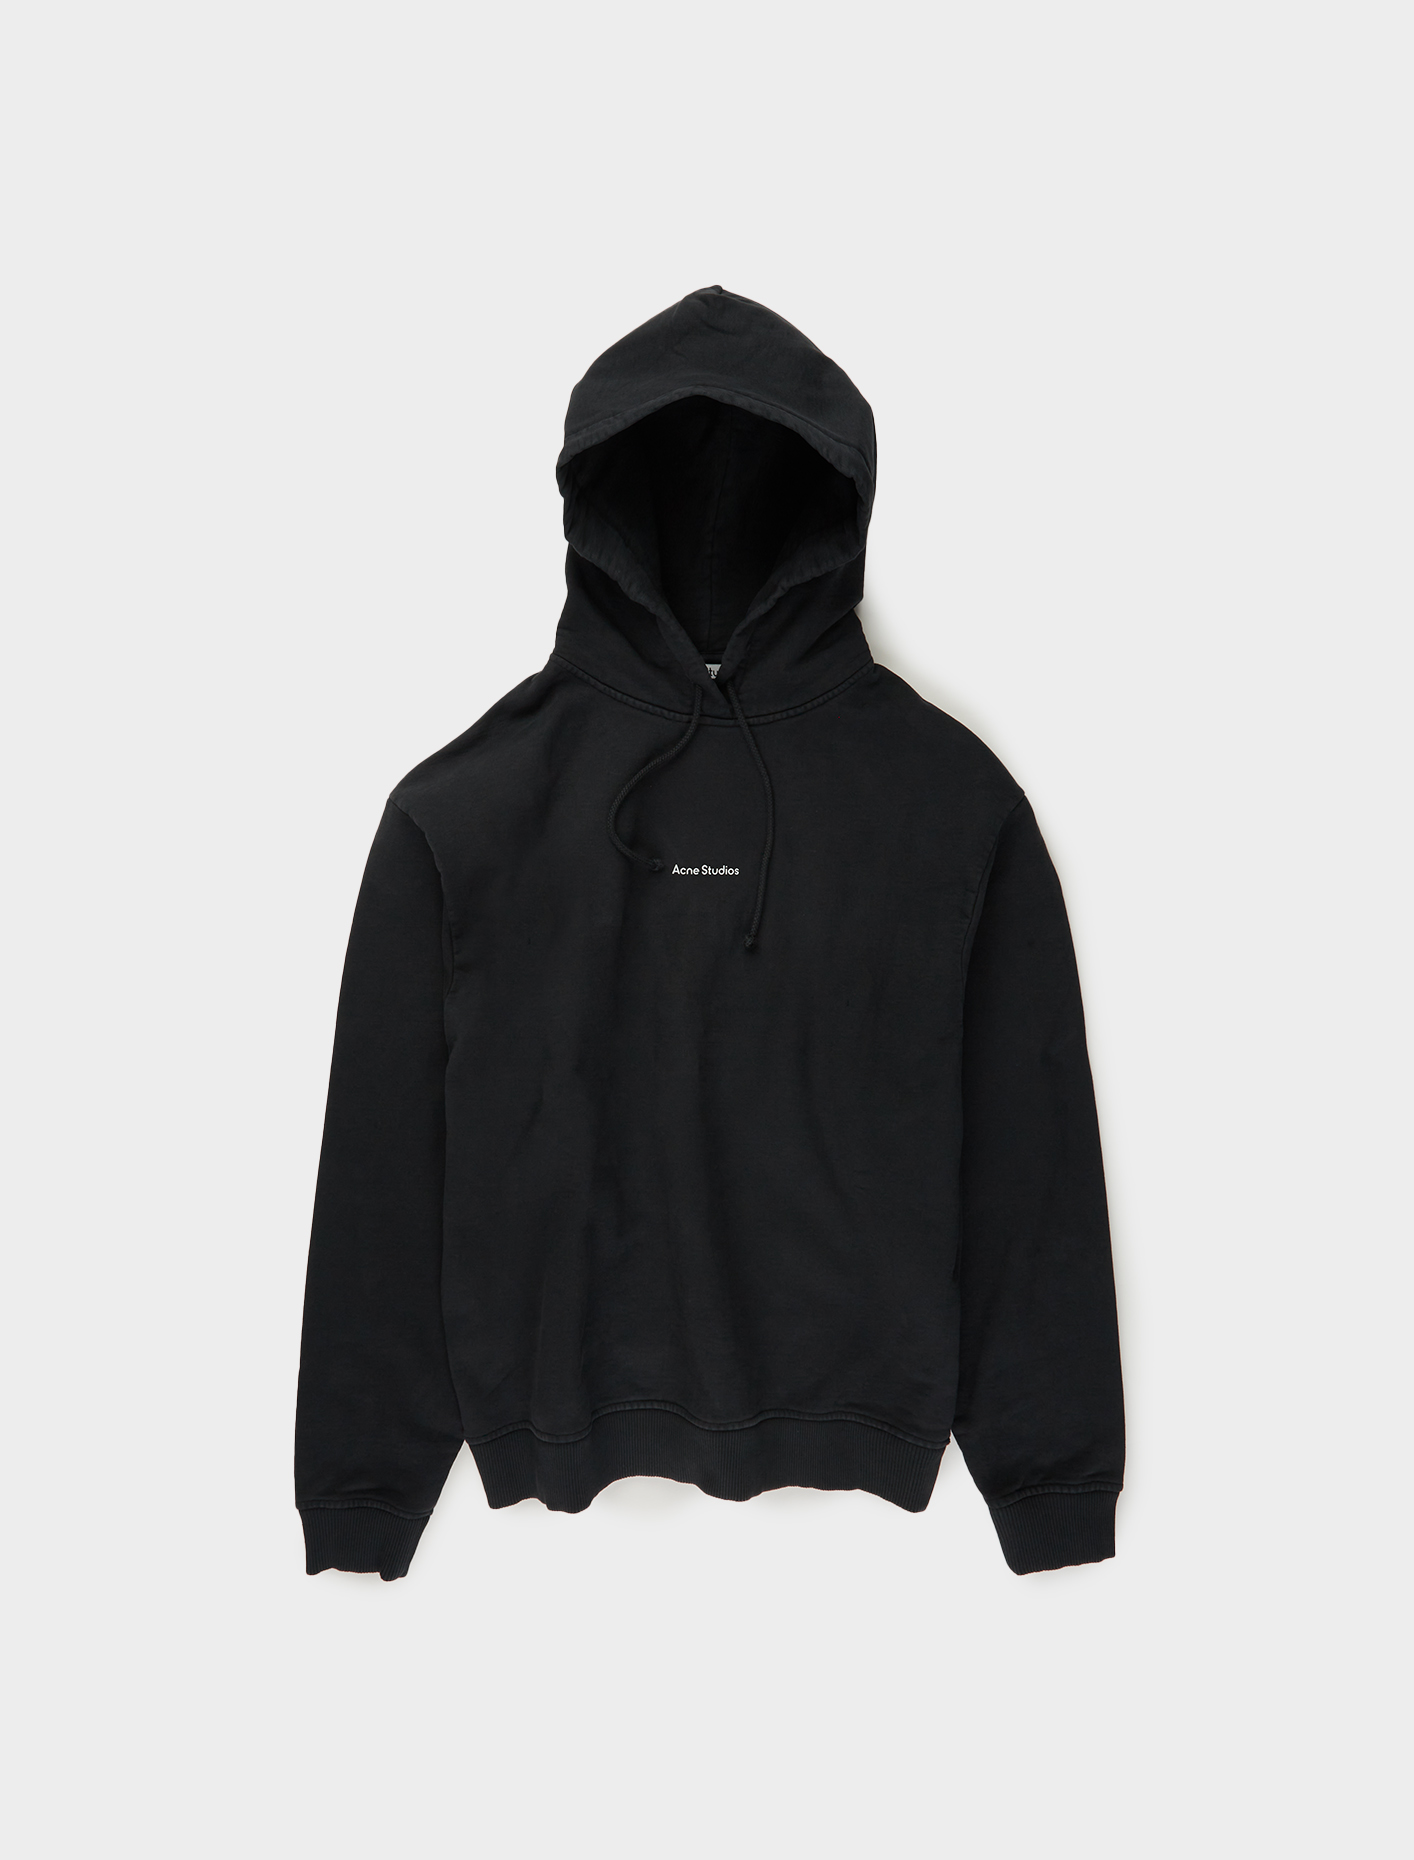 Acne Studios Logo Print Hooded Sweatshirt in Black | Voo Store Berlin ...